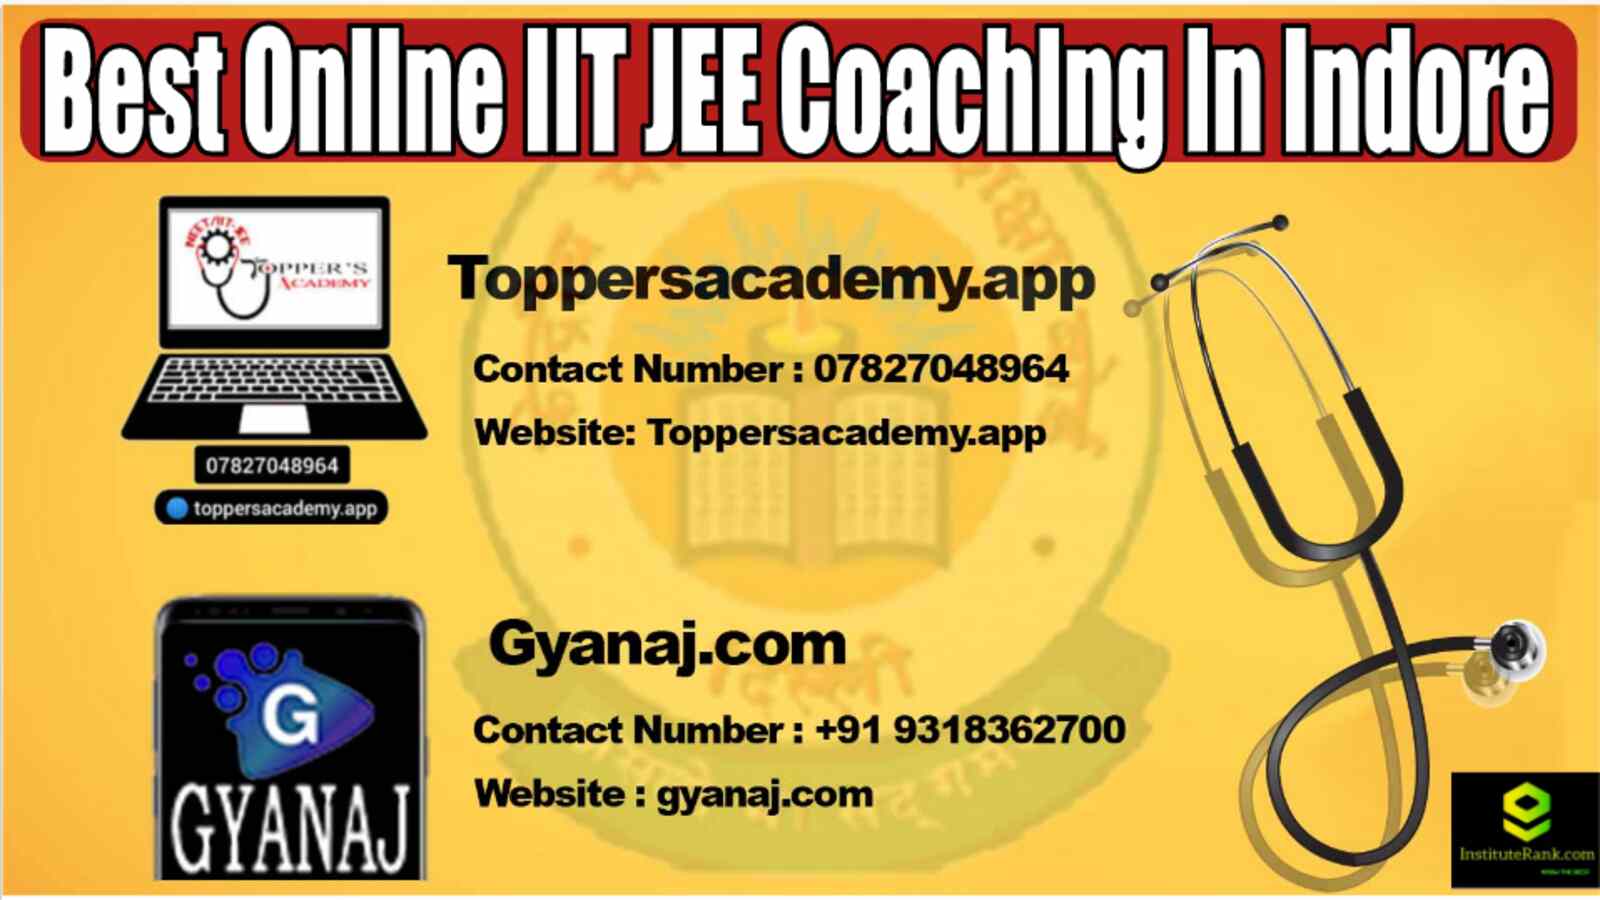 Best Online IIT JEE Coaching in Indore 2022